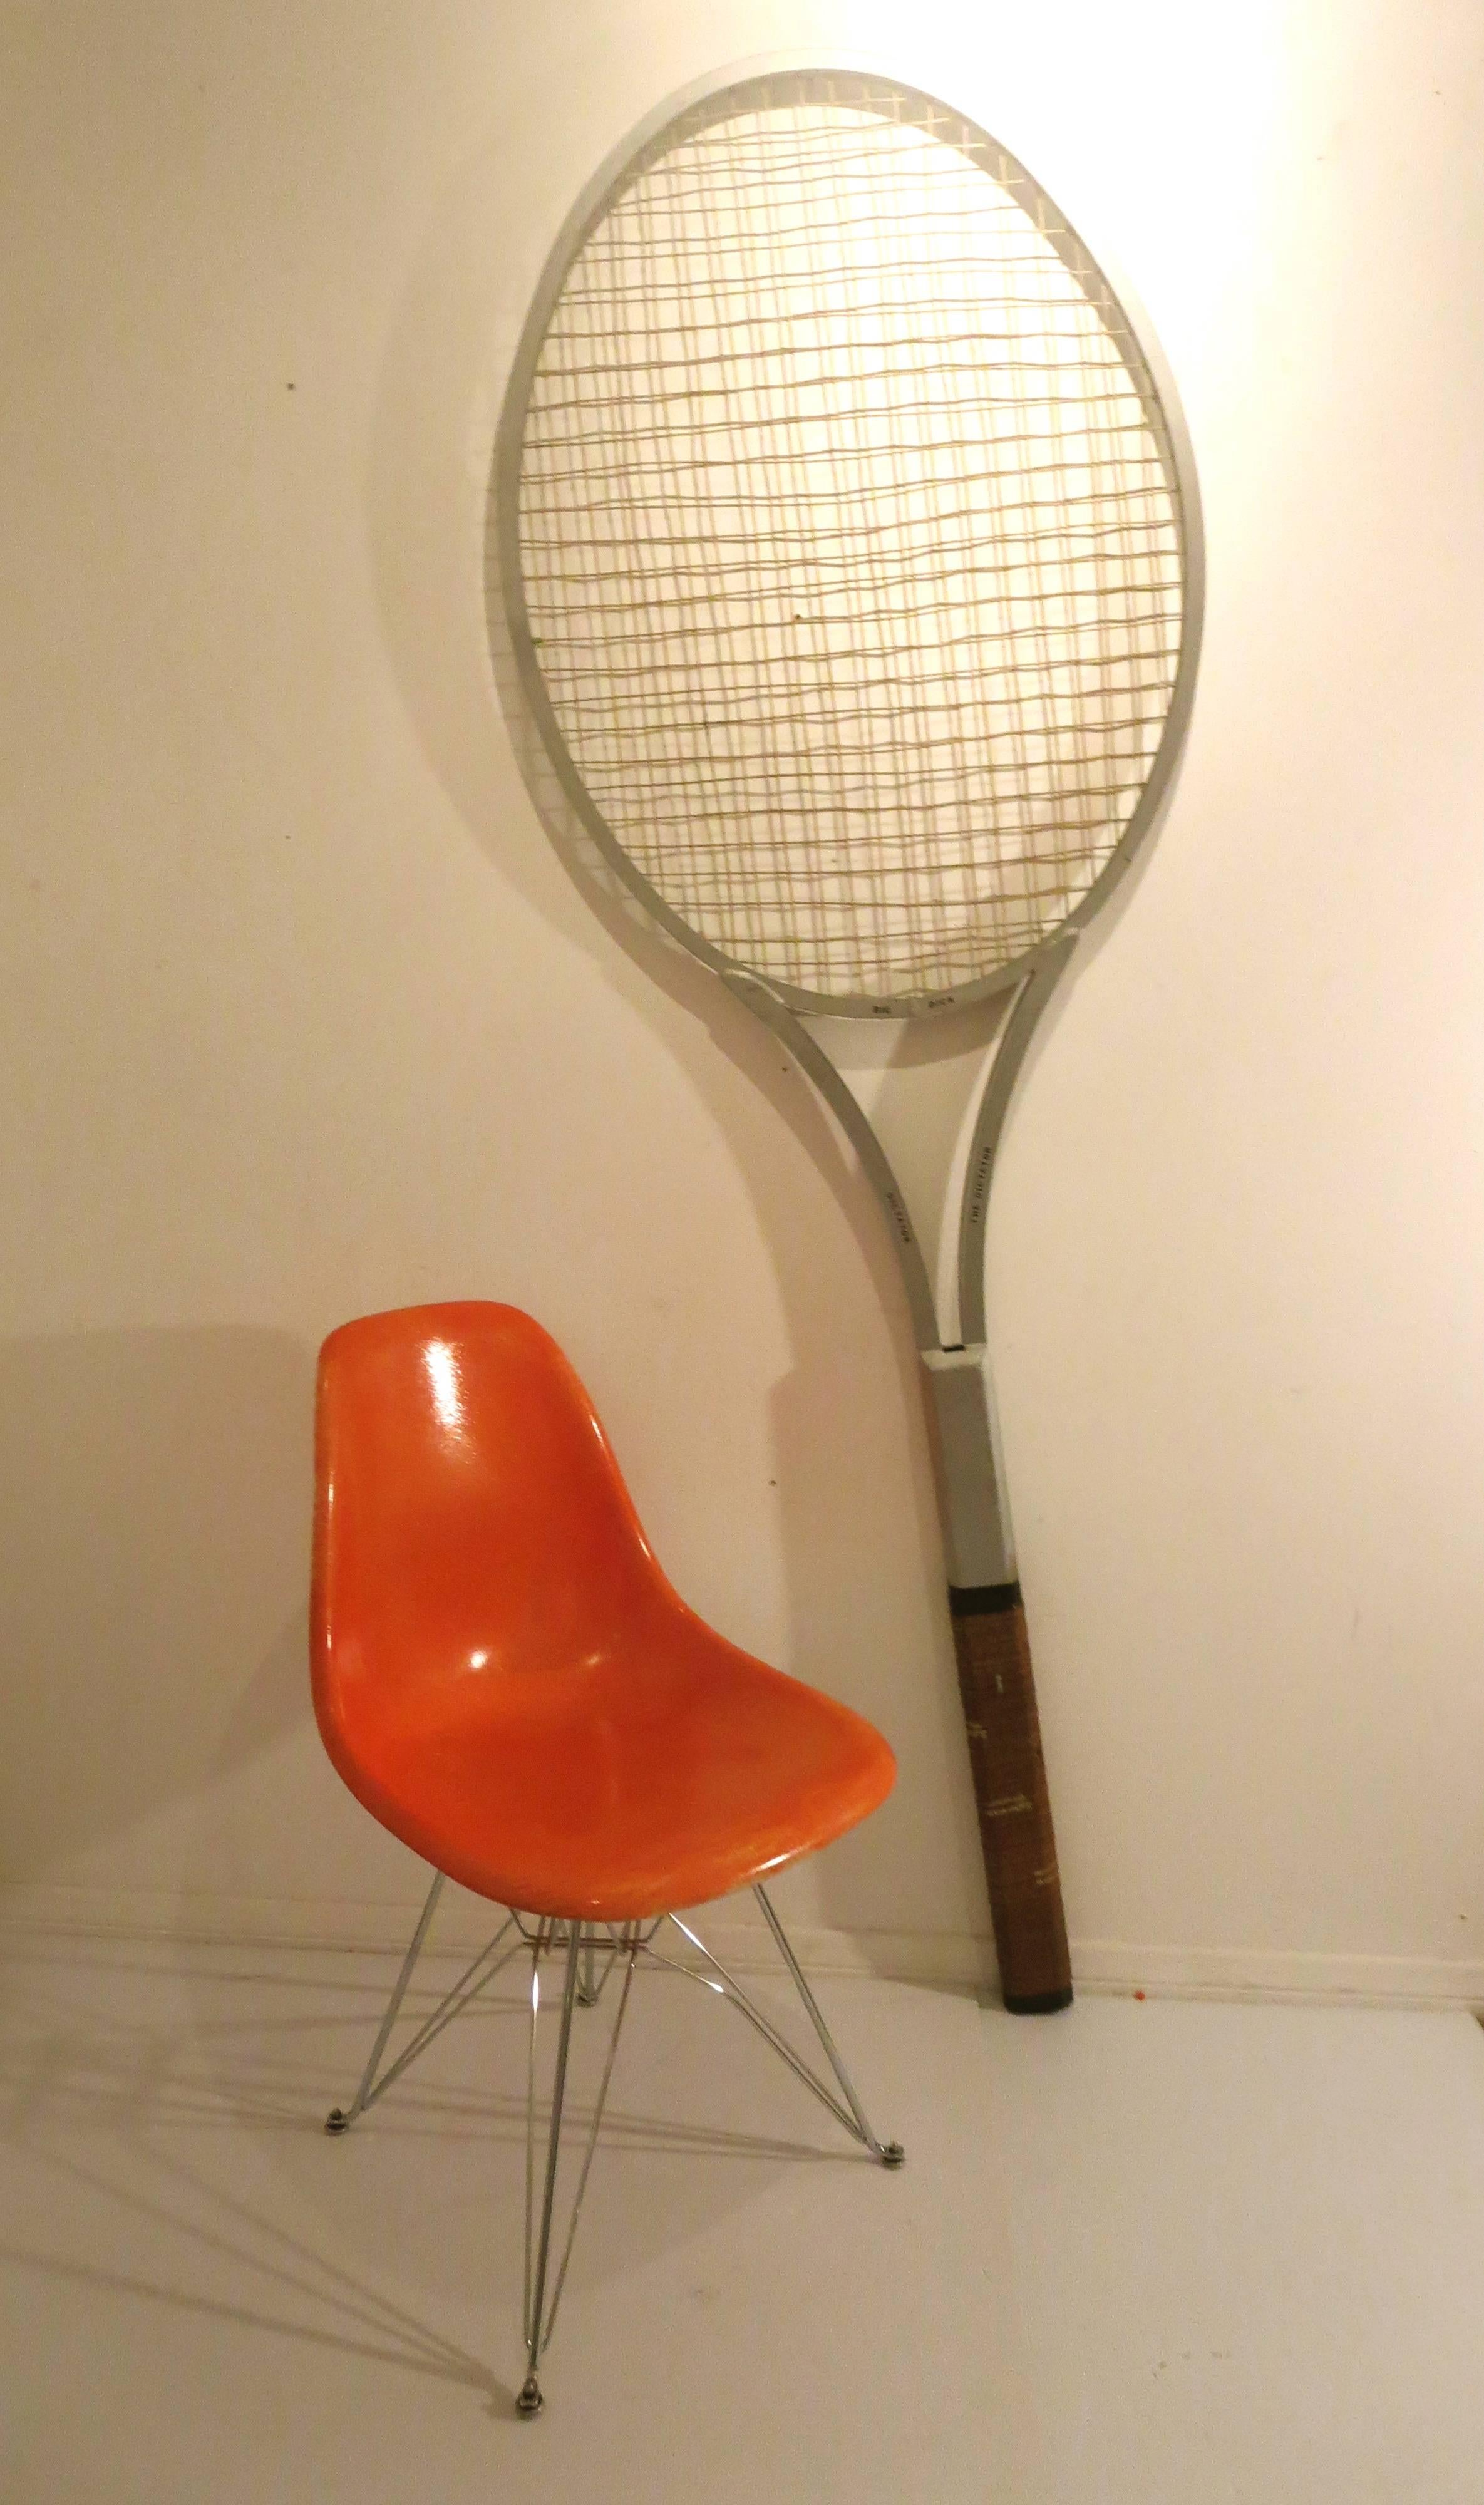 Extra large tennis display tennis racket, circa 1970s. 